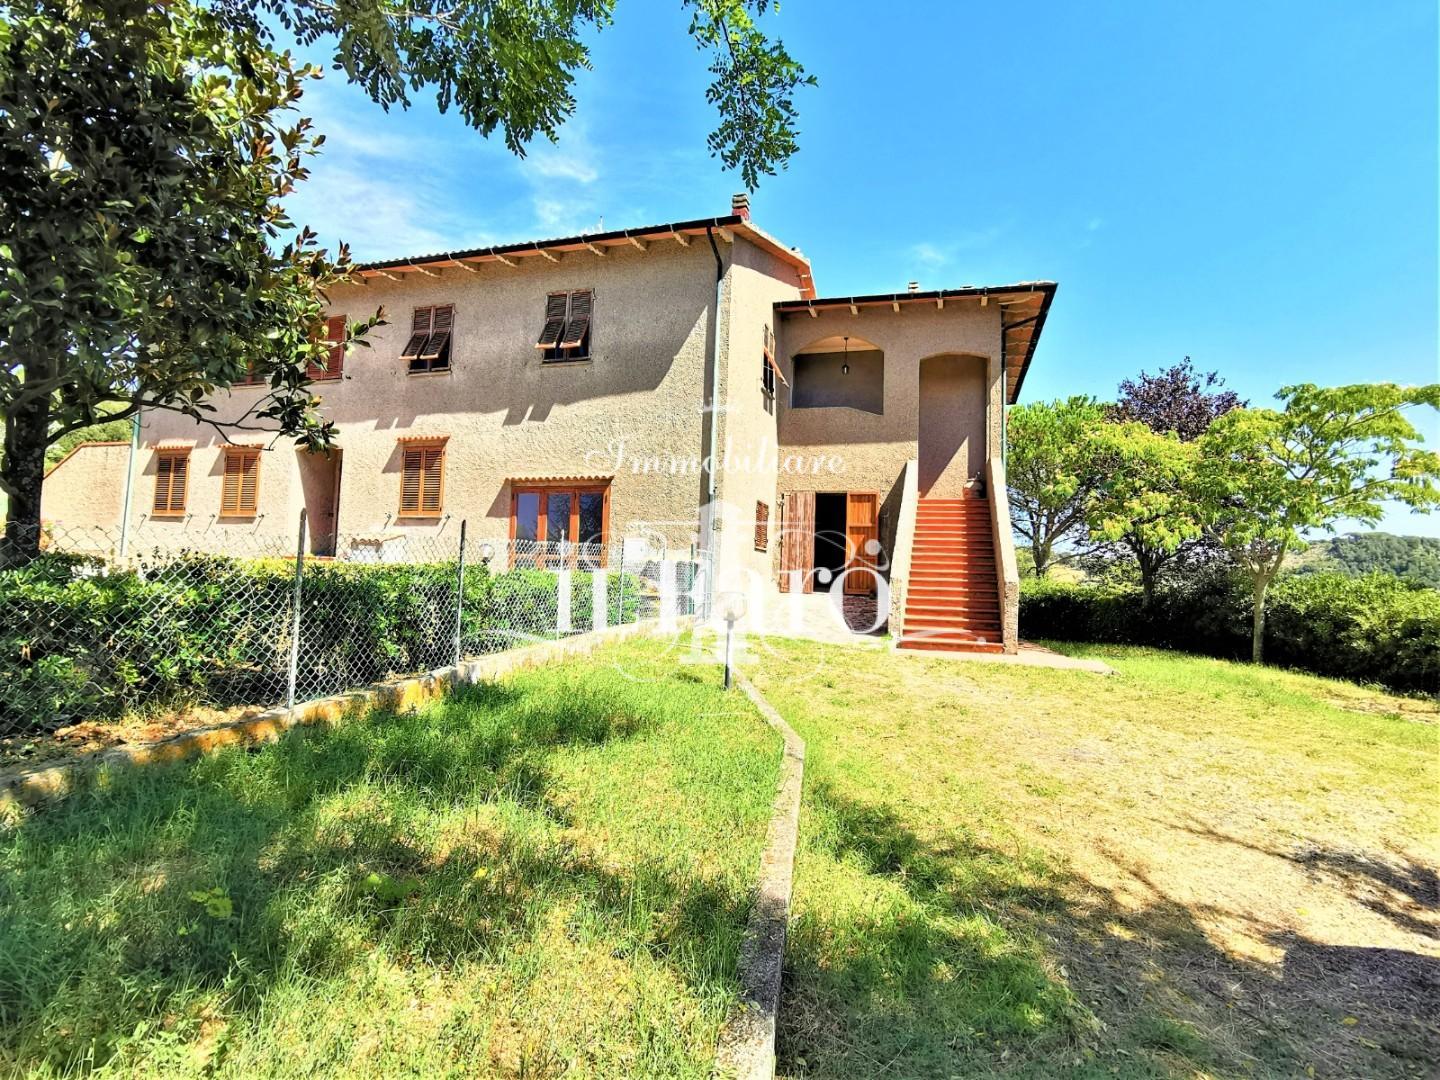 Villa Tri-Quadrifamiliare in vendita a Pomarance, 5 locali, prezzo € 169.000 | CambioCasa.it